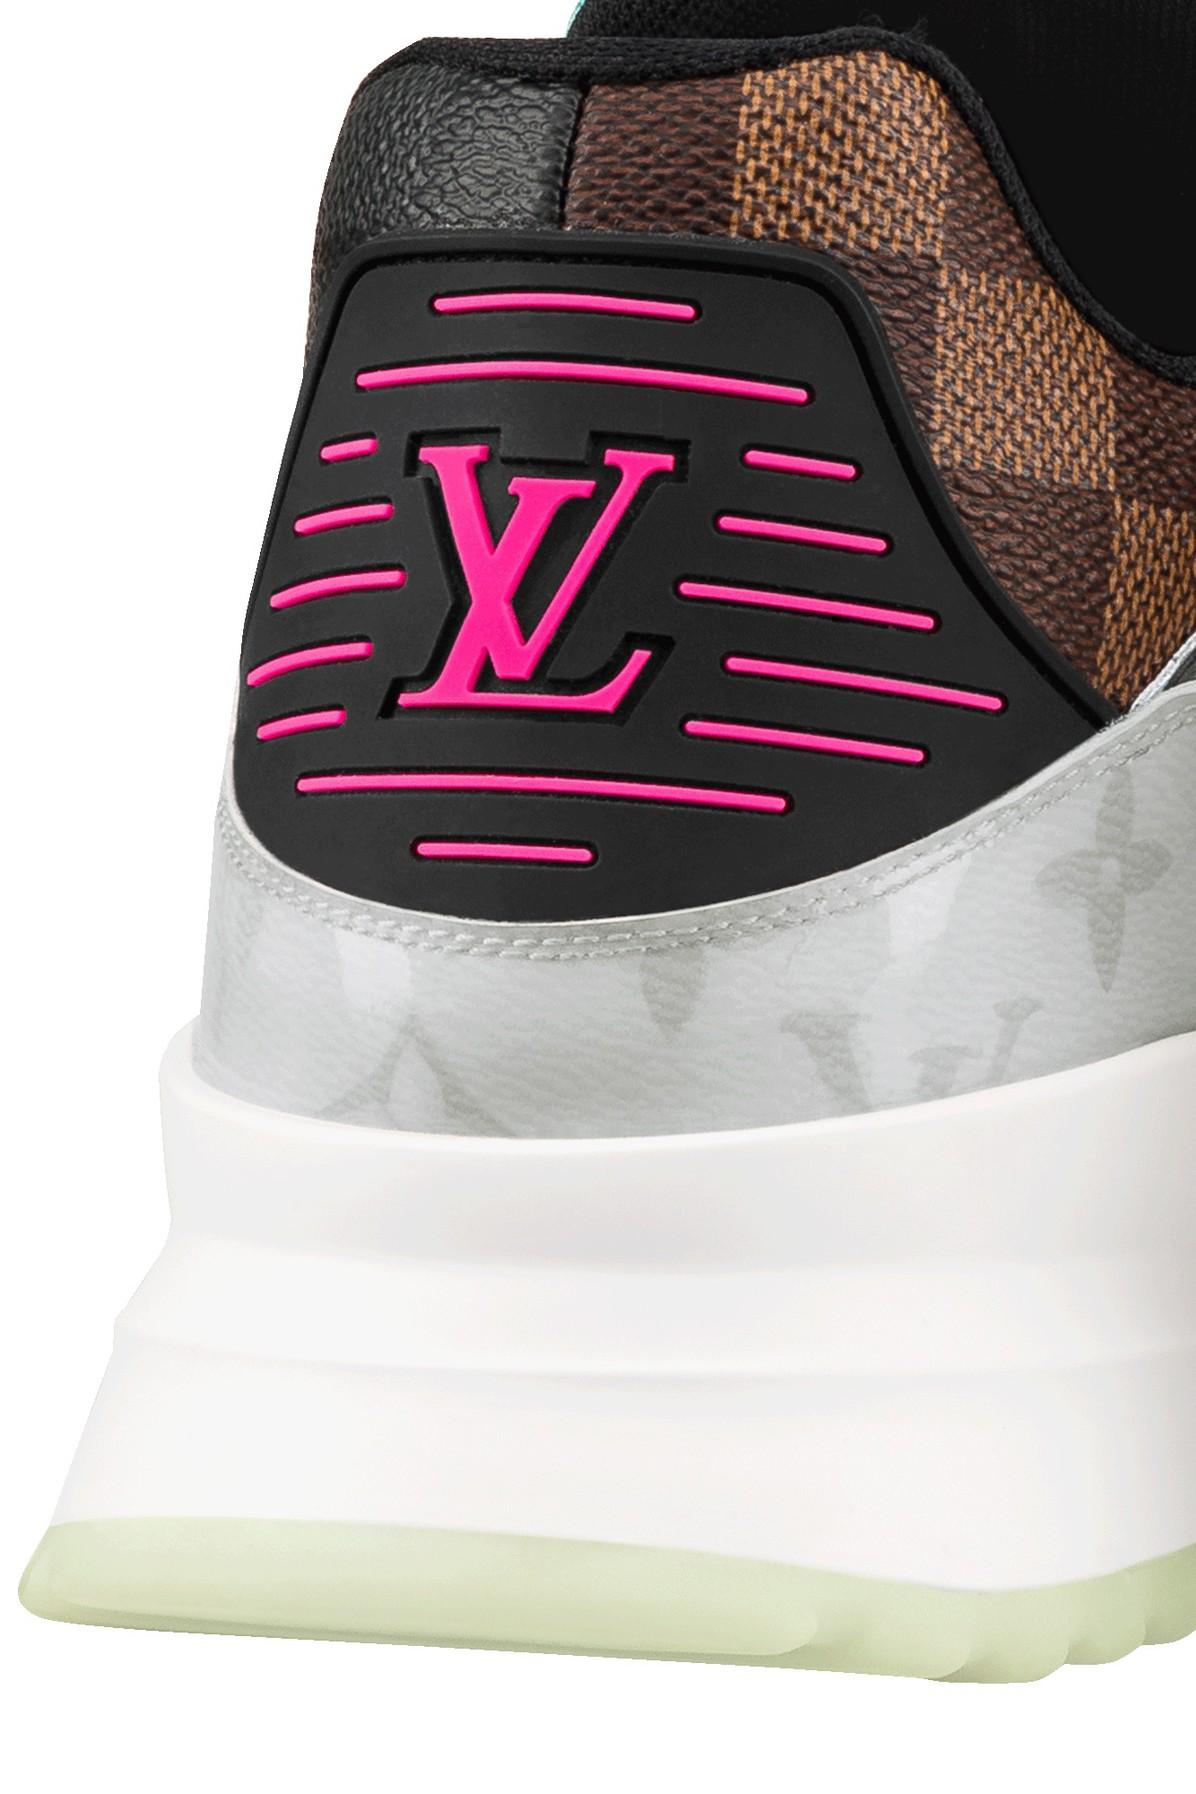 Louis Vuitton Zigzag Multicolor Leather Sneakers Size 11 Men'